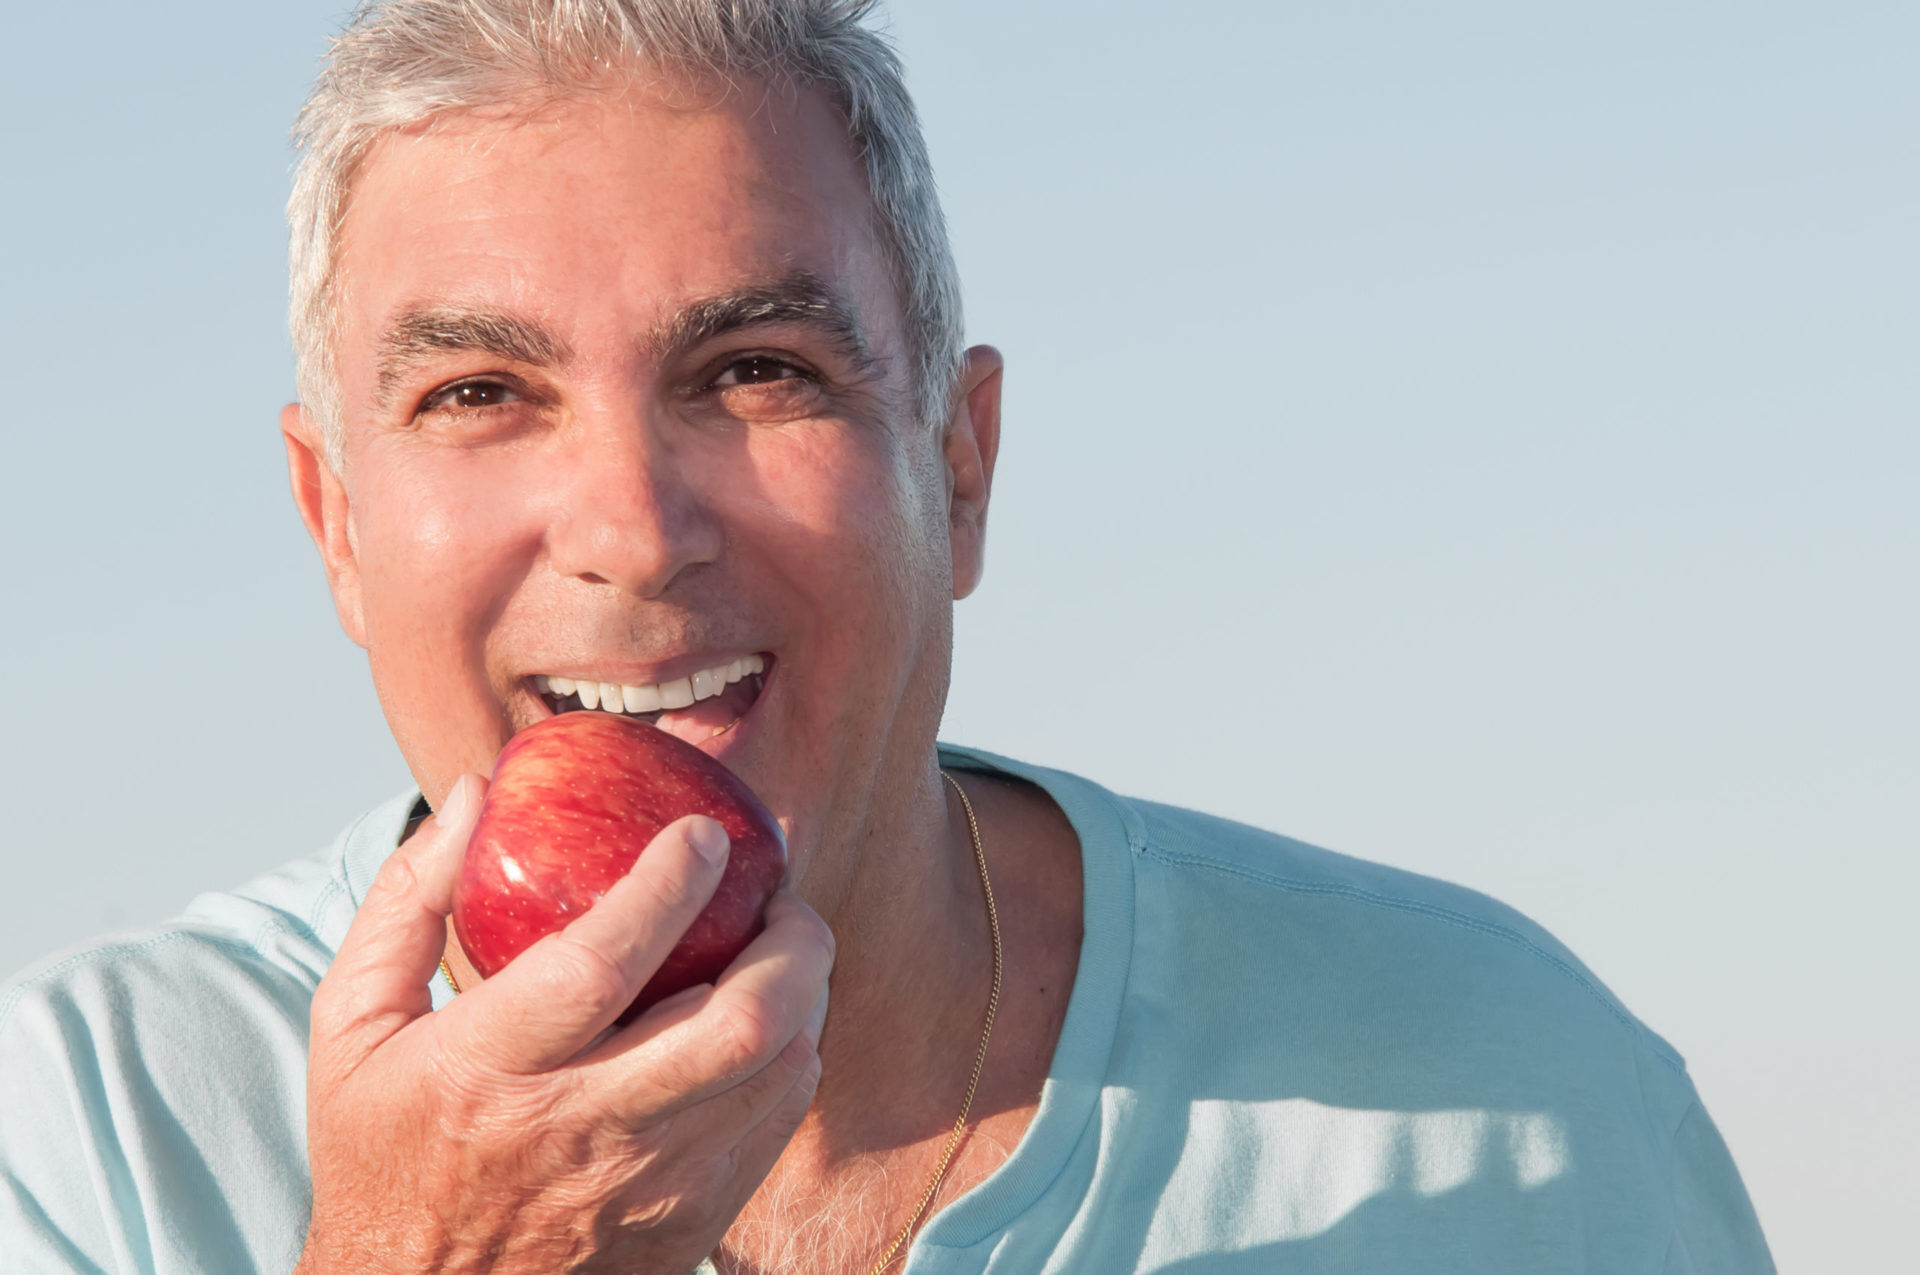 smiling man biting apple